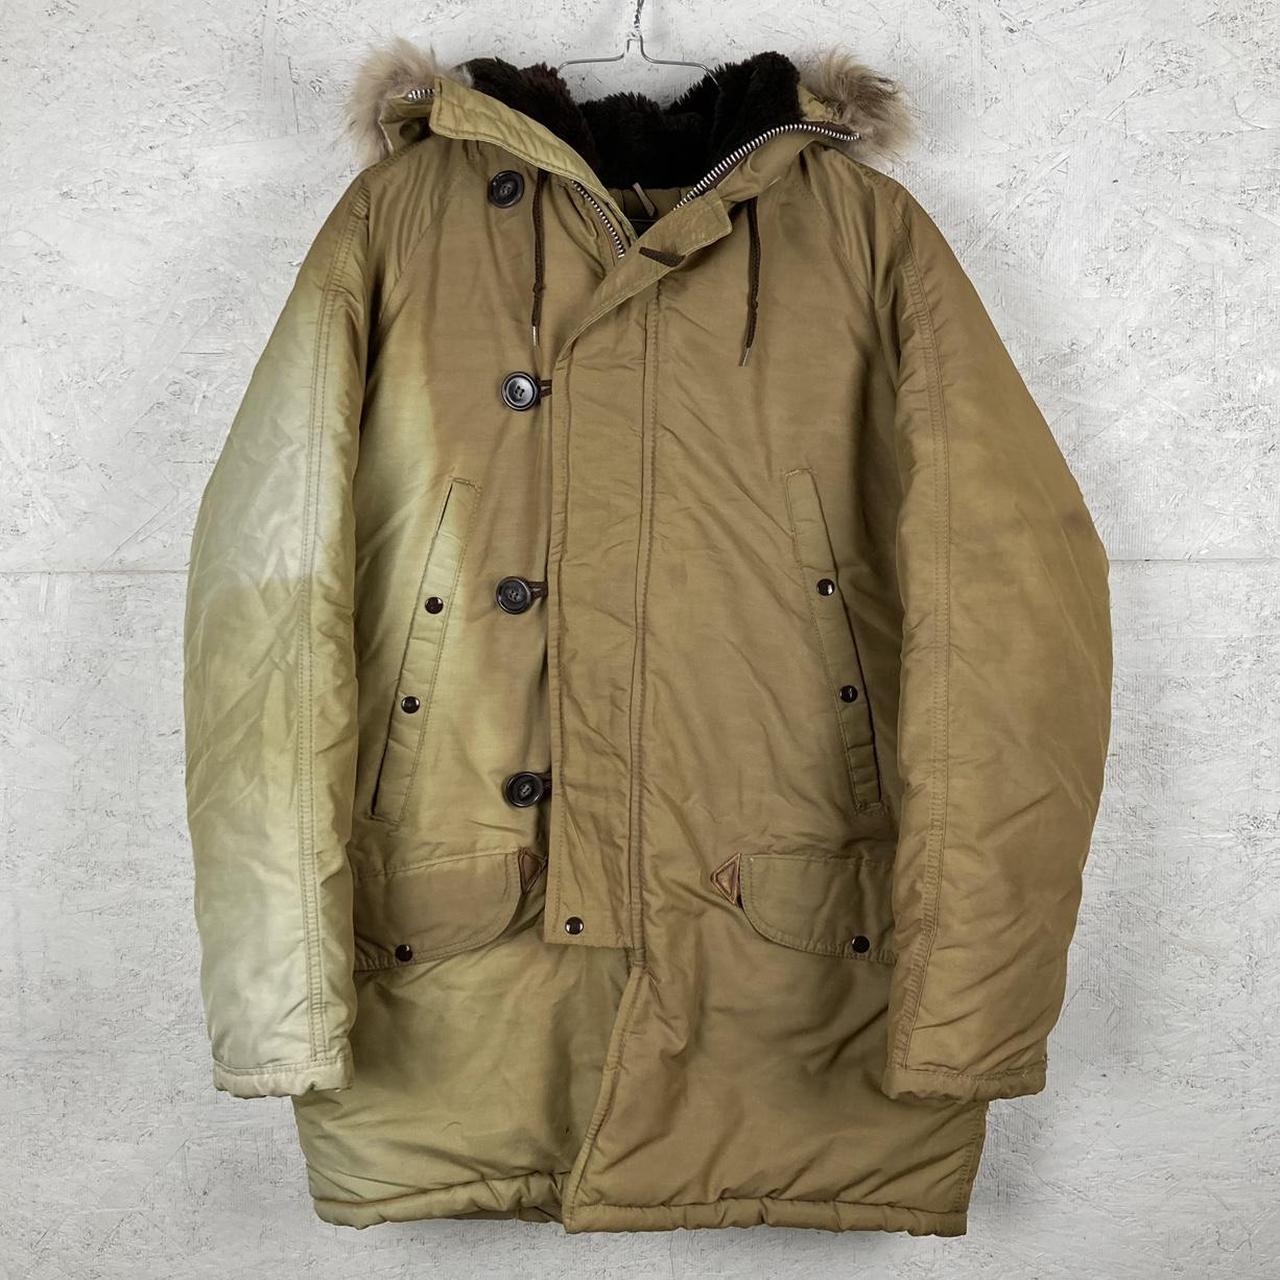 Vintage 1970s Golden Fleece parka jacket Zips up... - Depop